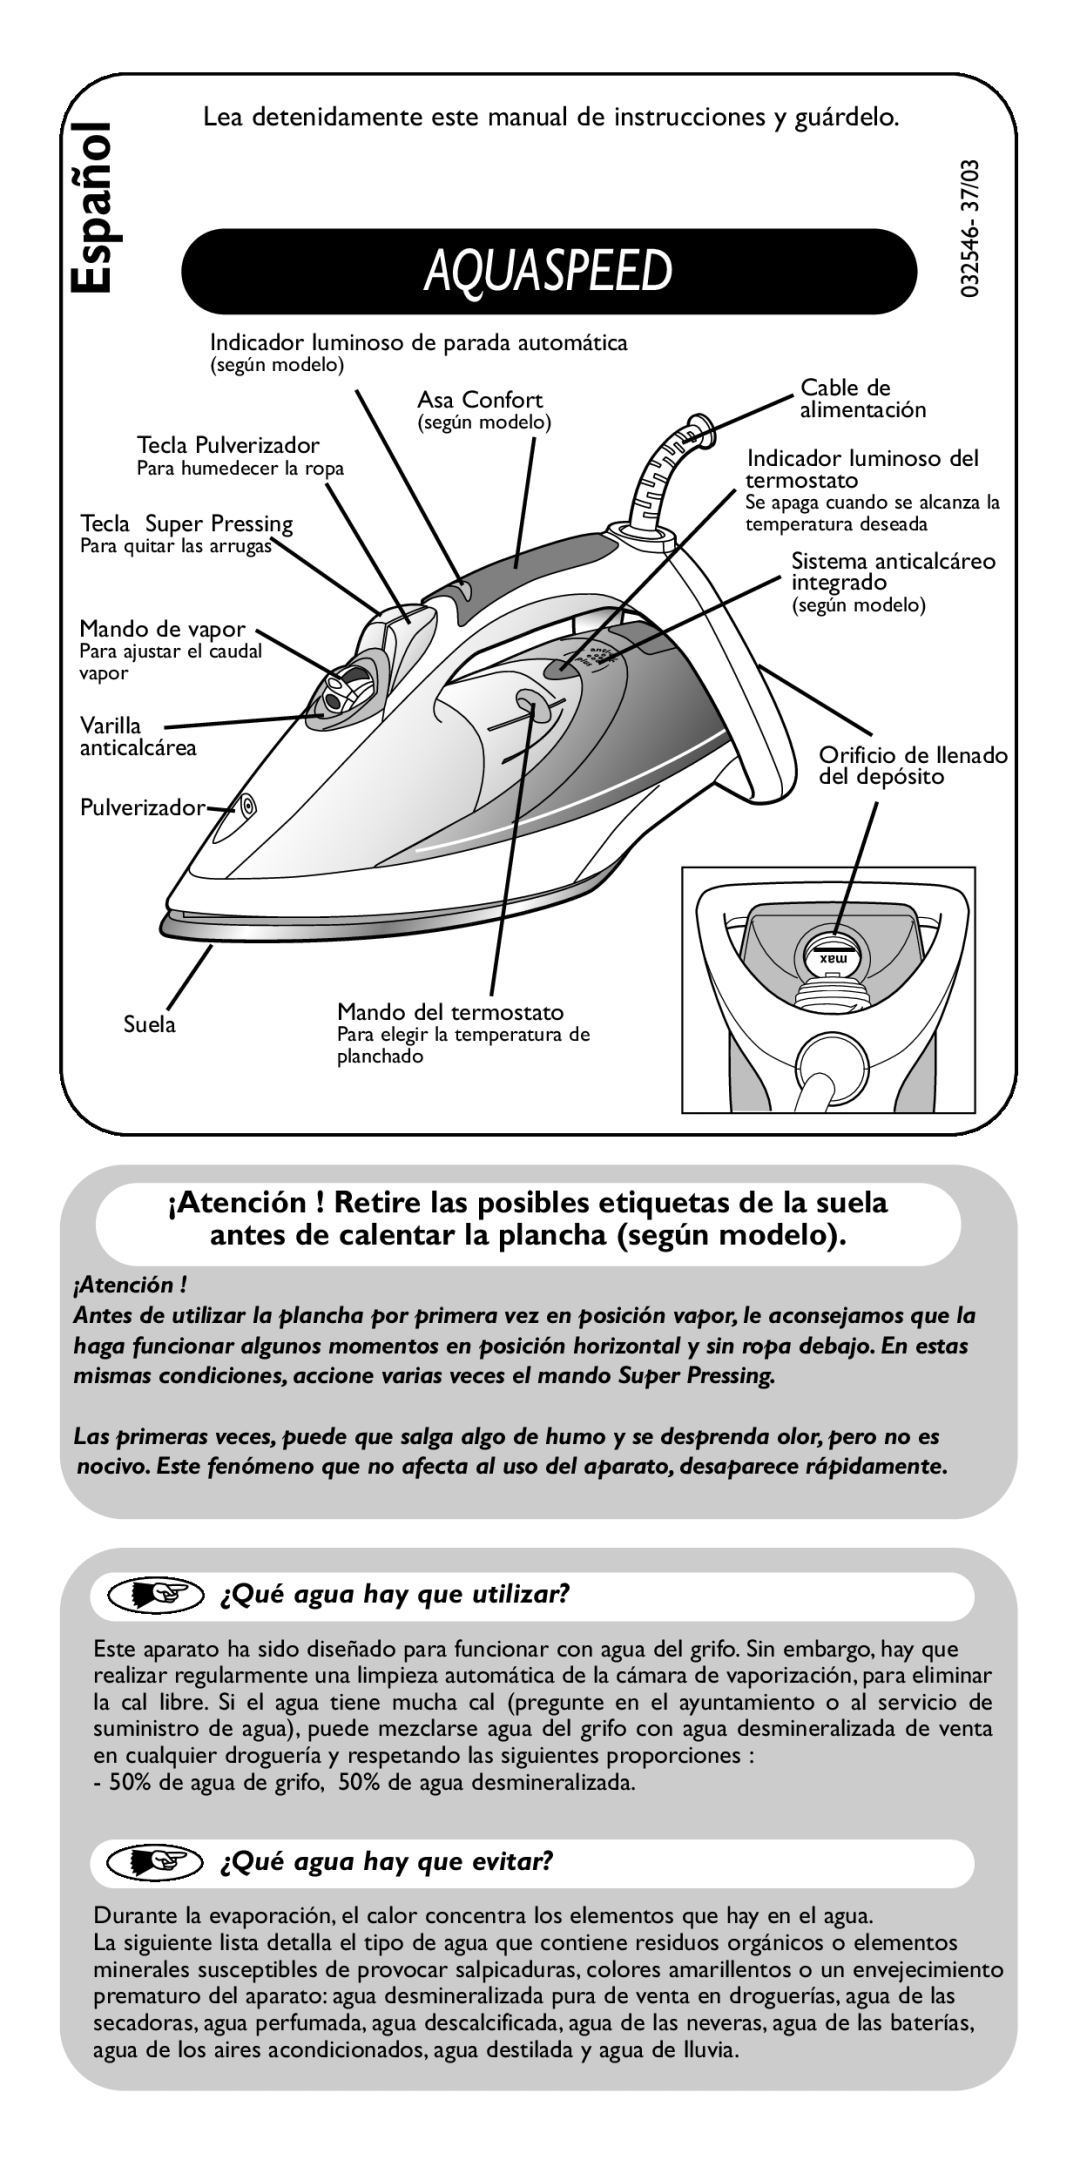 Groupe SEB USA - T-FAL FV5110 manual Español, ¿Qué agua hay que utilizar?, ¿Qué agua hay que evitar?, Aquaspeed, ¡Atención 